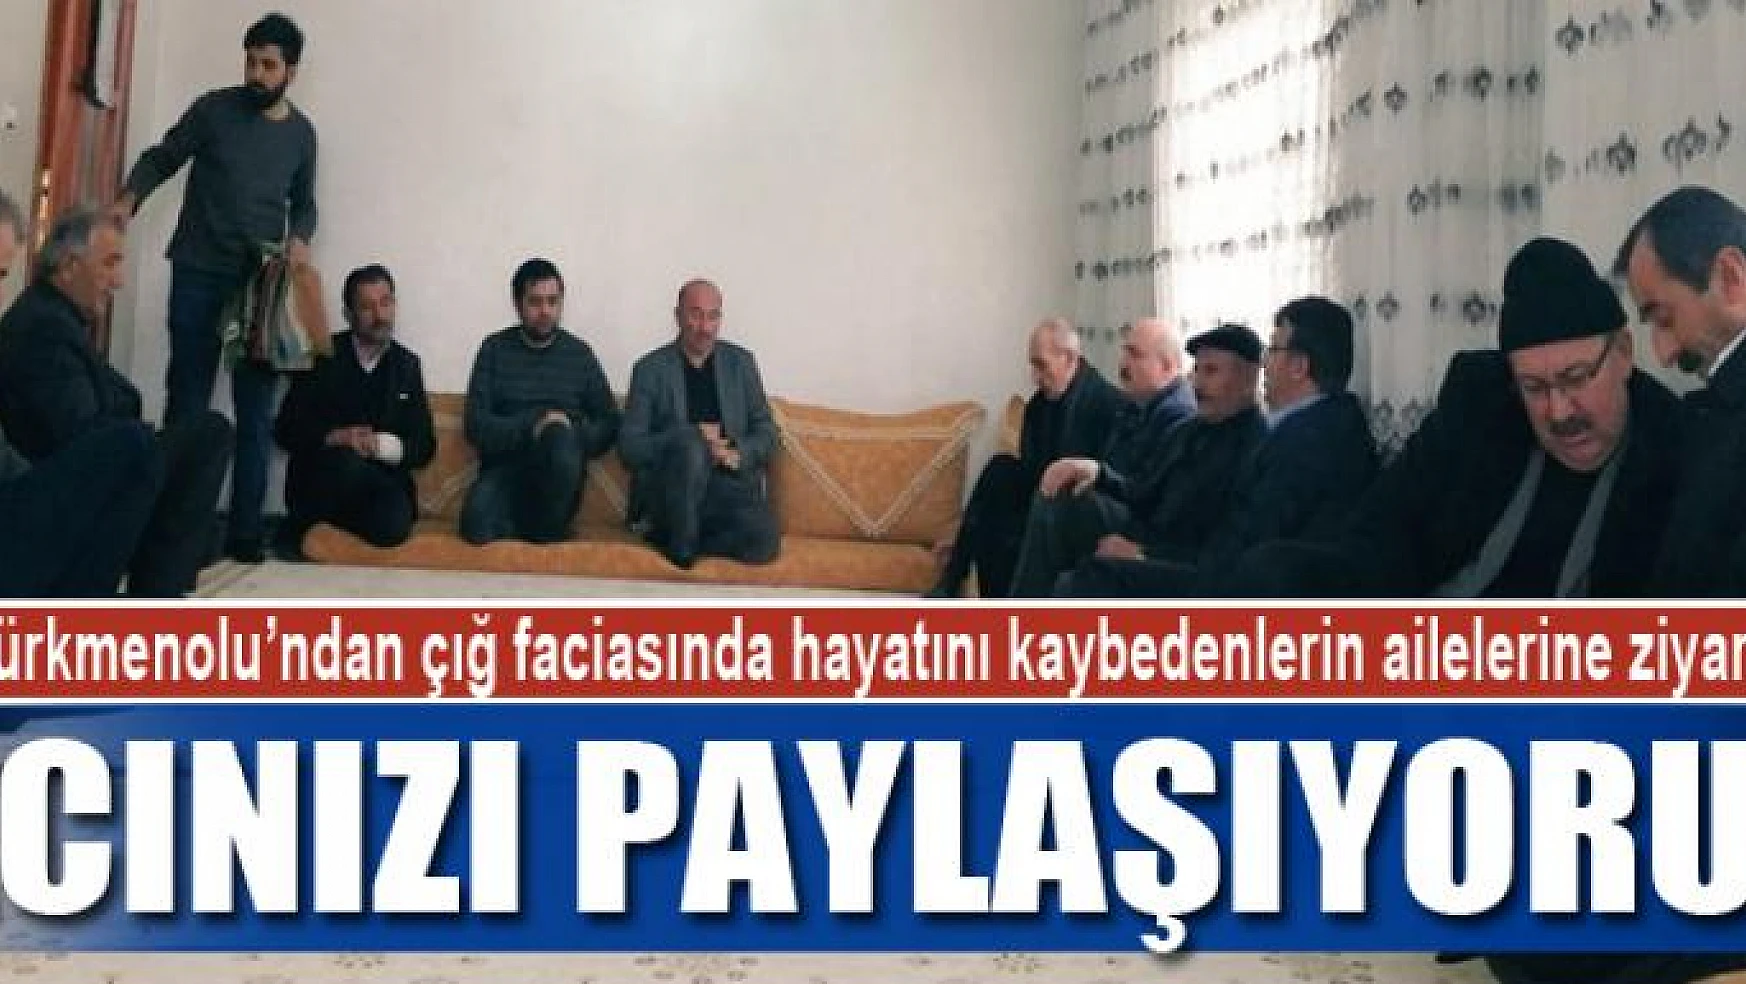 Türkmenolu'ndan çığ faciasında hayatını kaybedenlerin ailelerine ziyaret